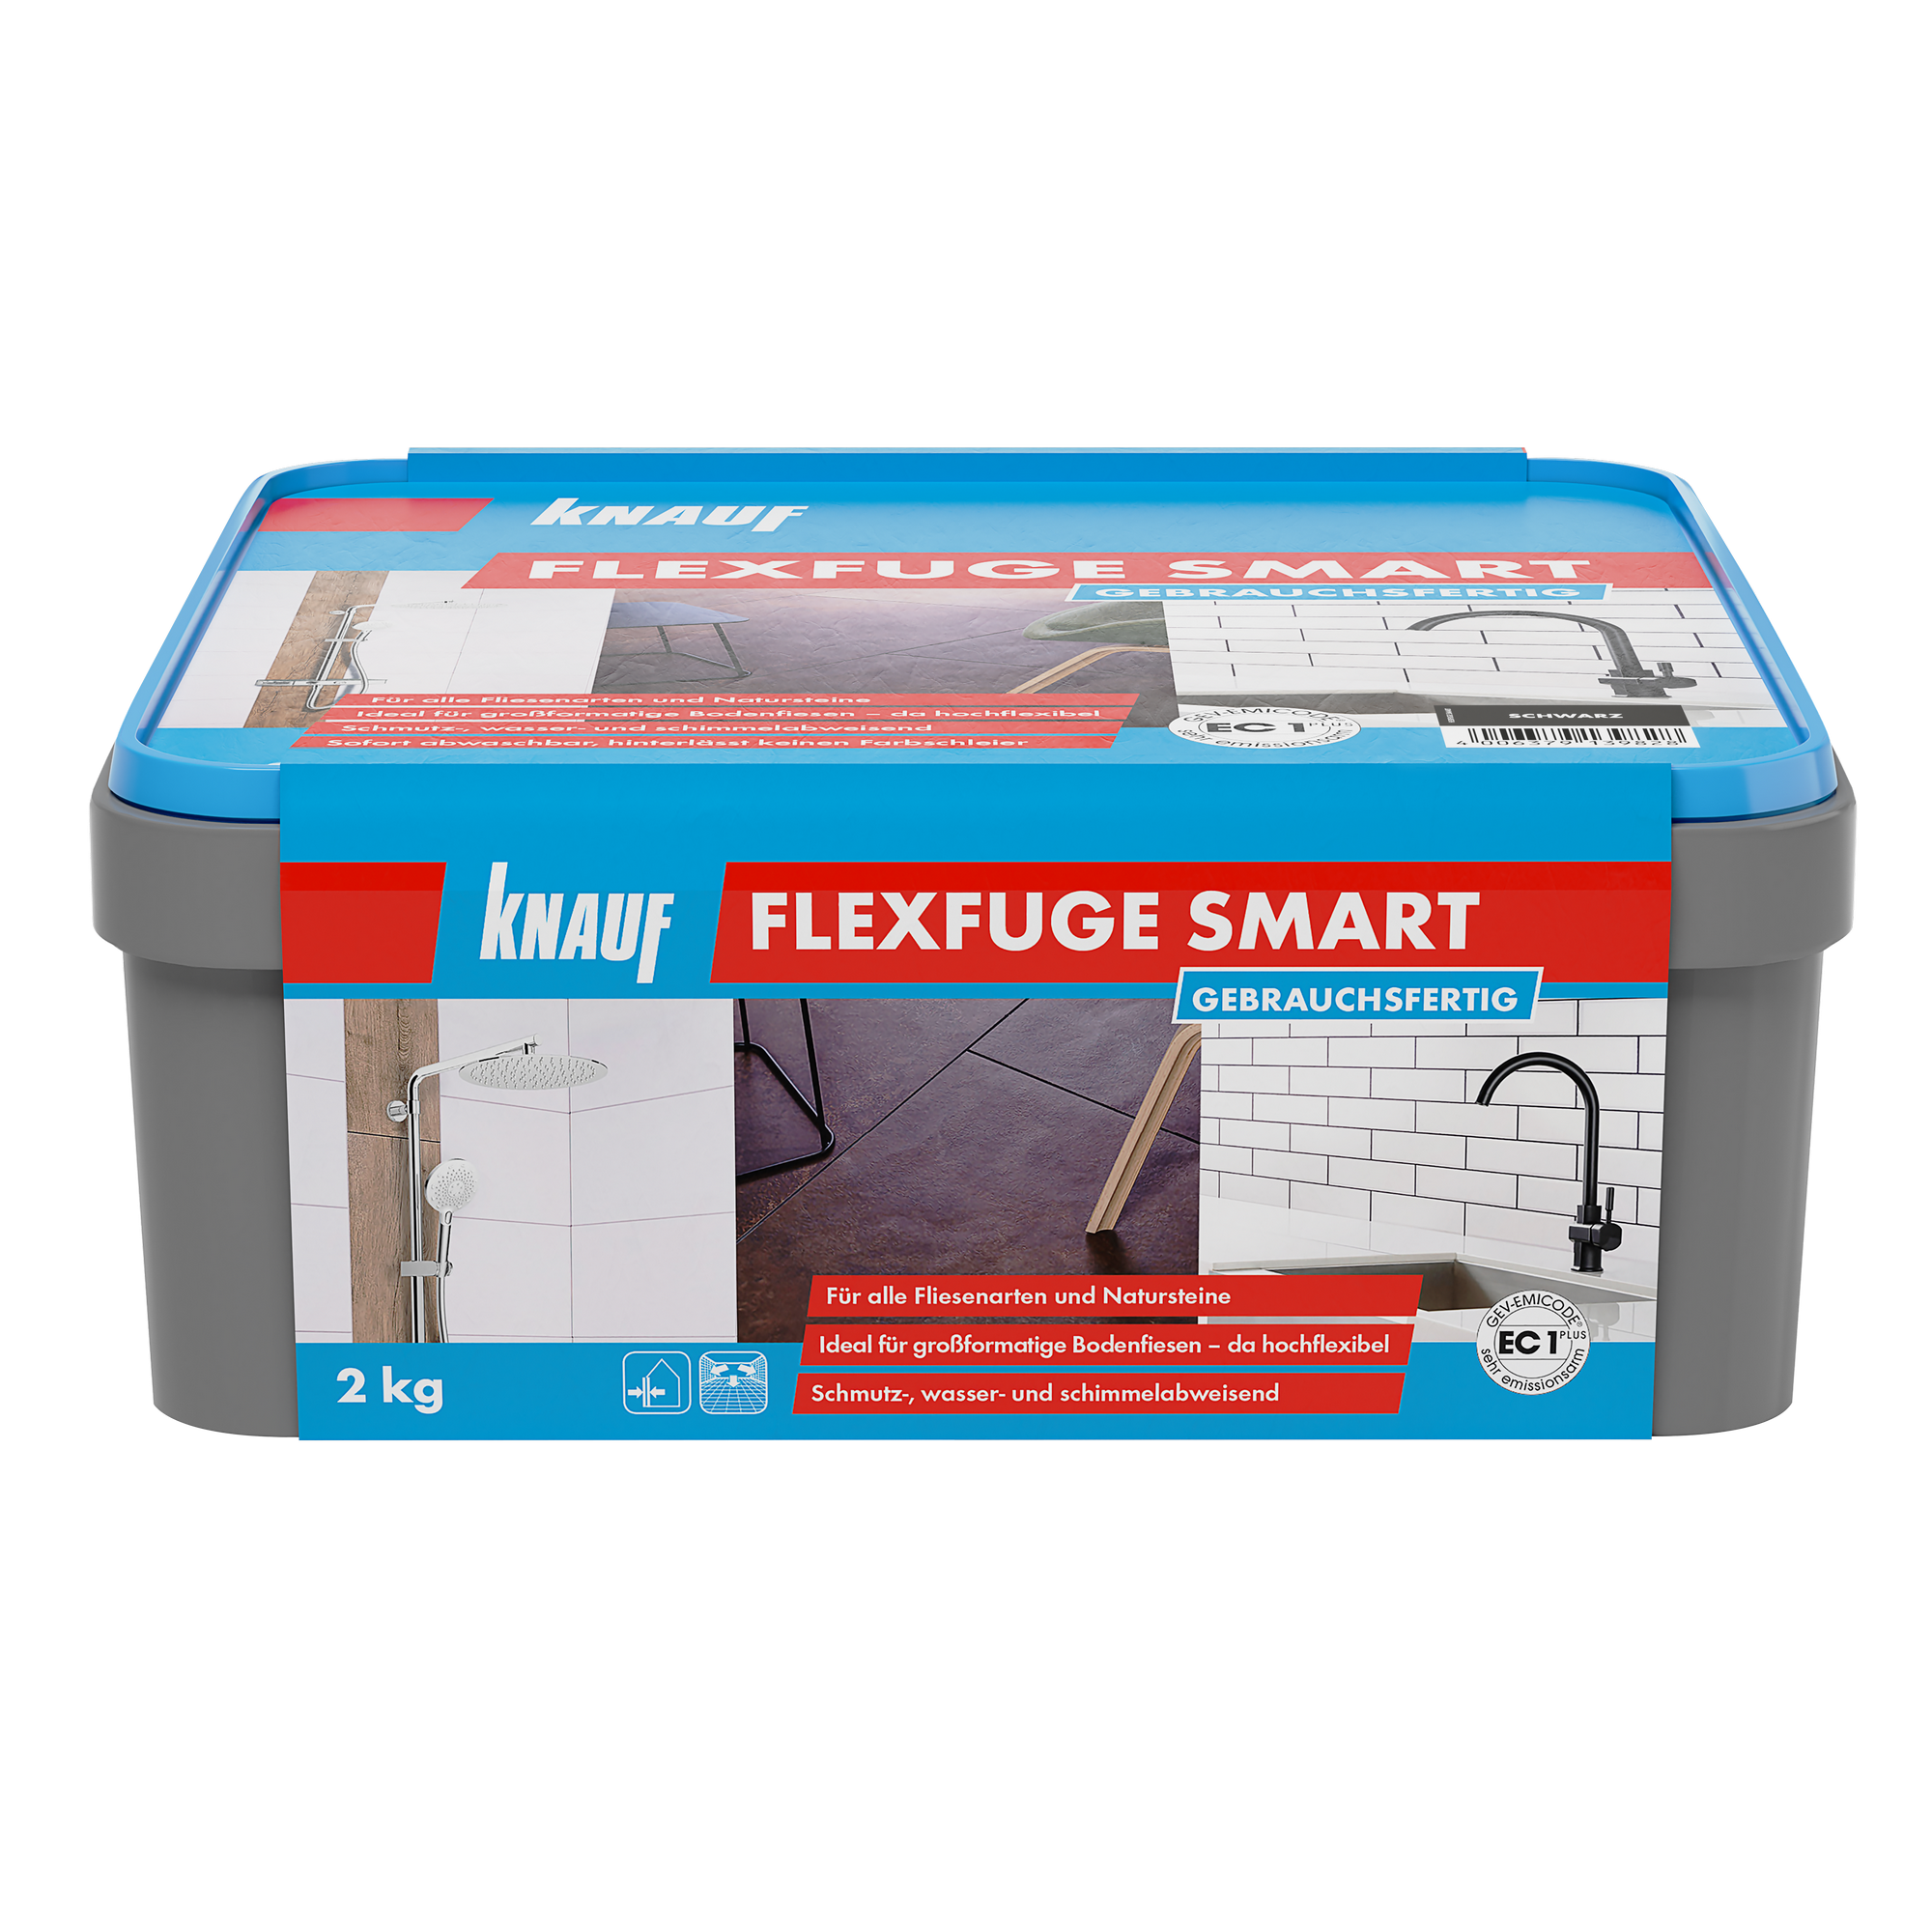 Flexfuge 'Smart' schwarz 2 kg + product picture